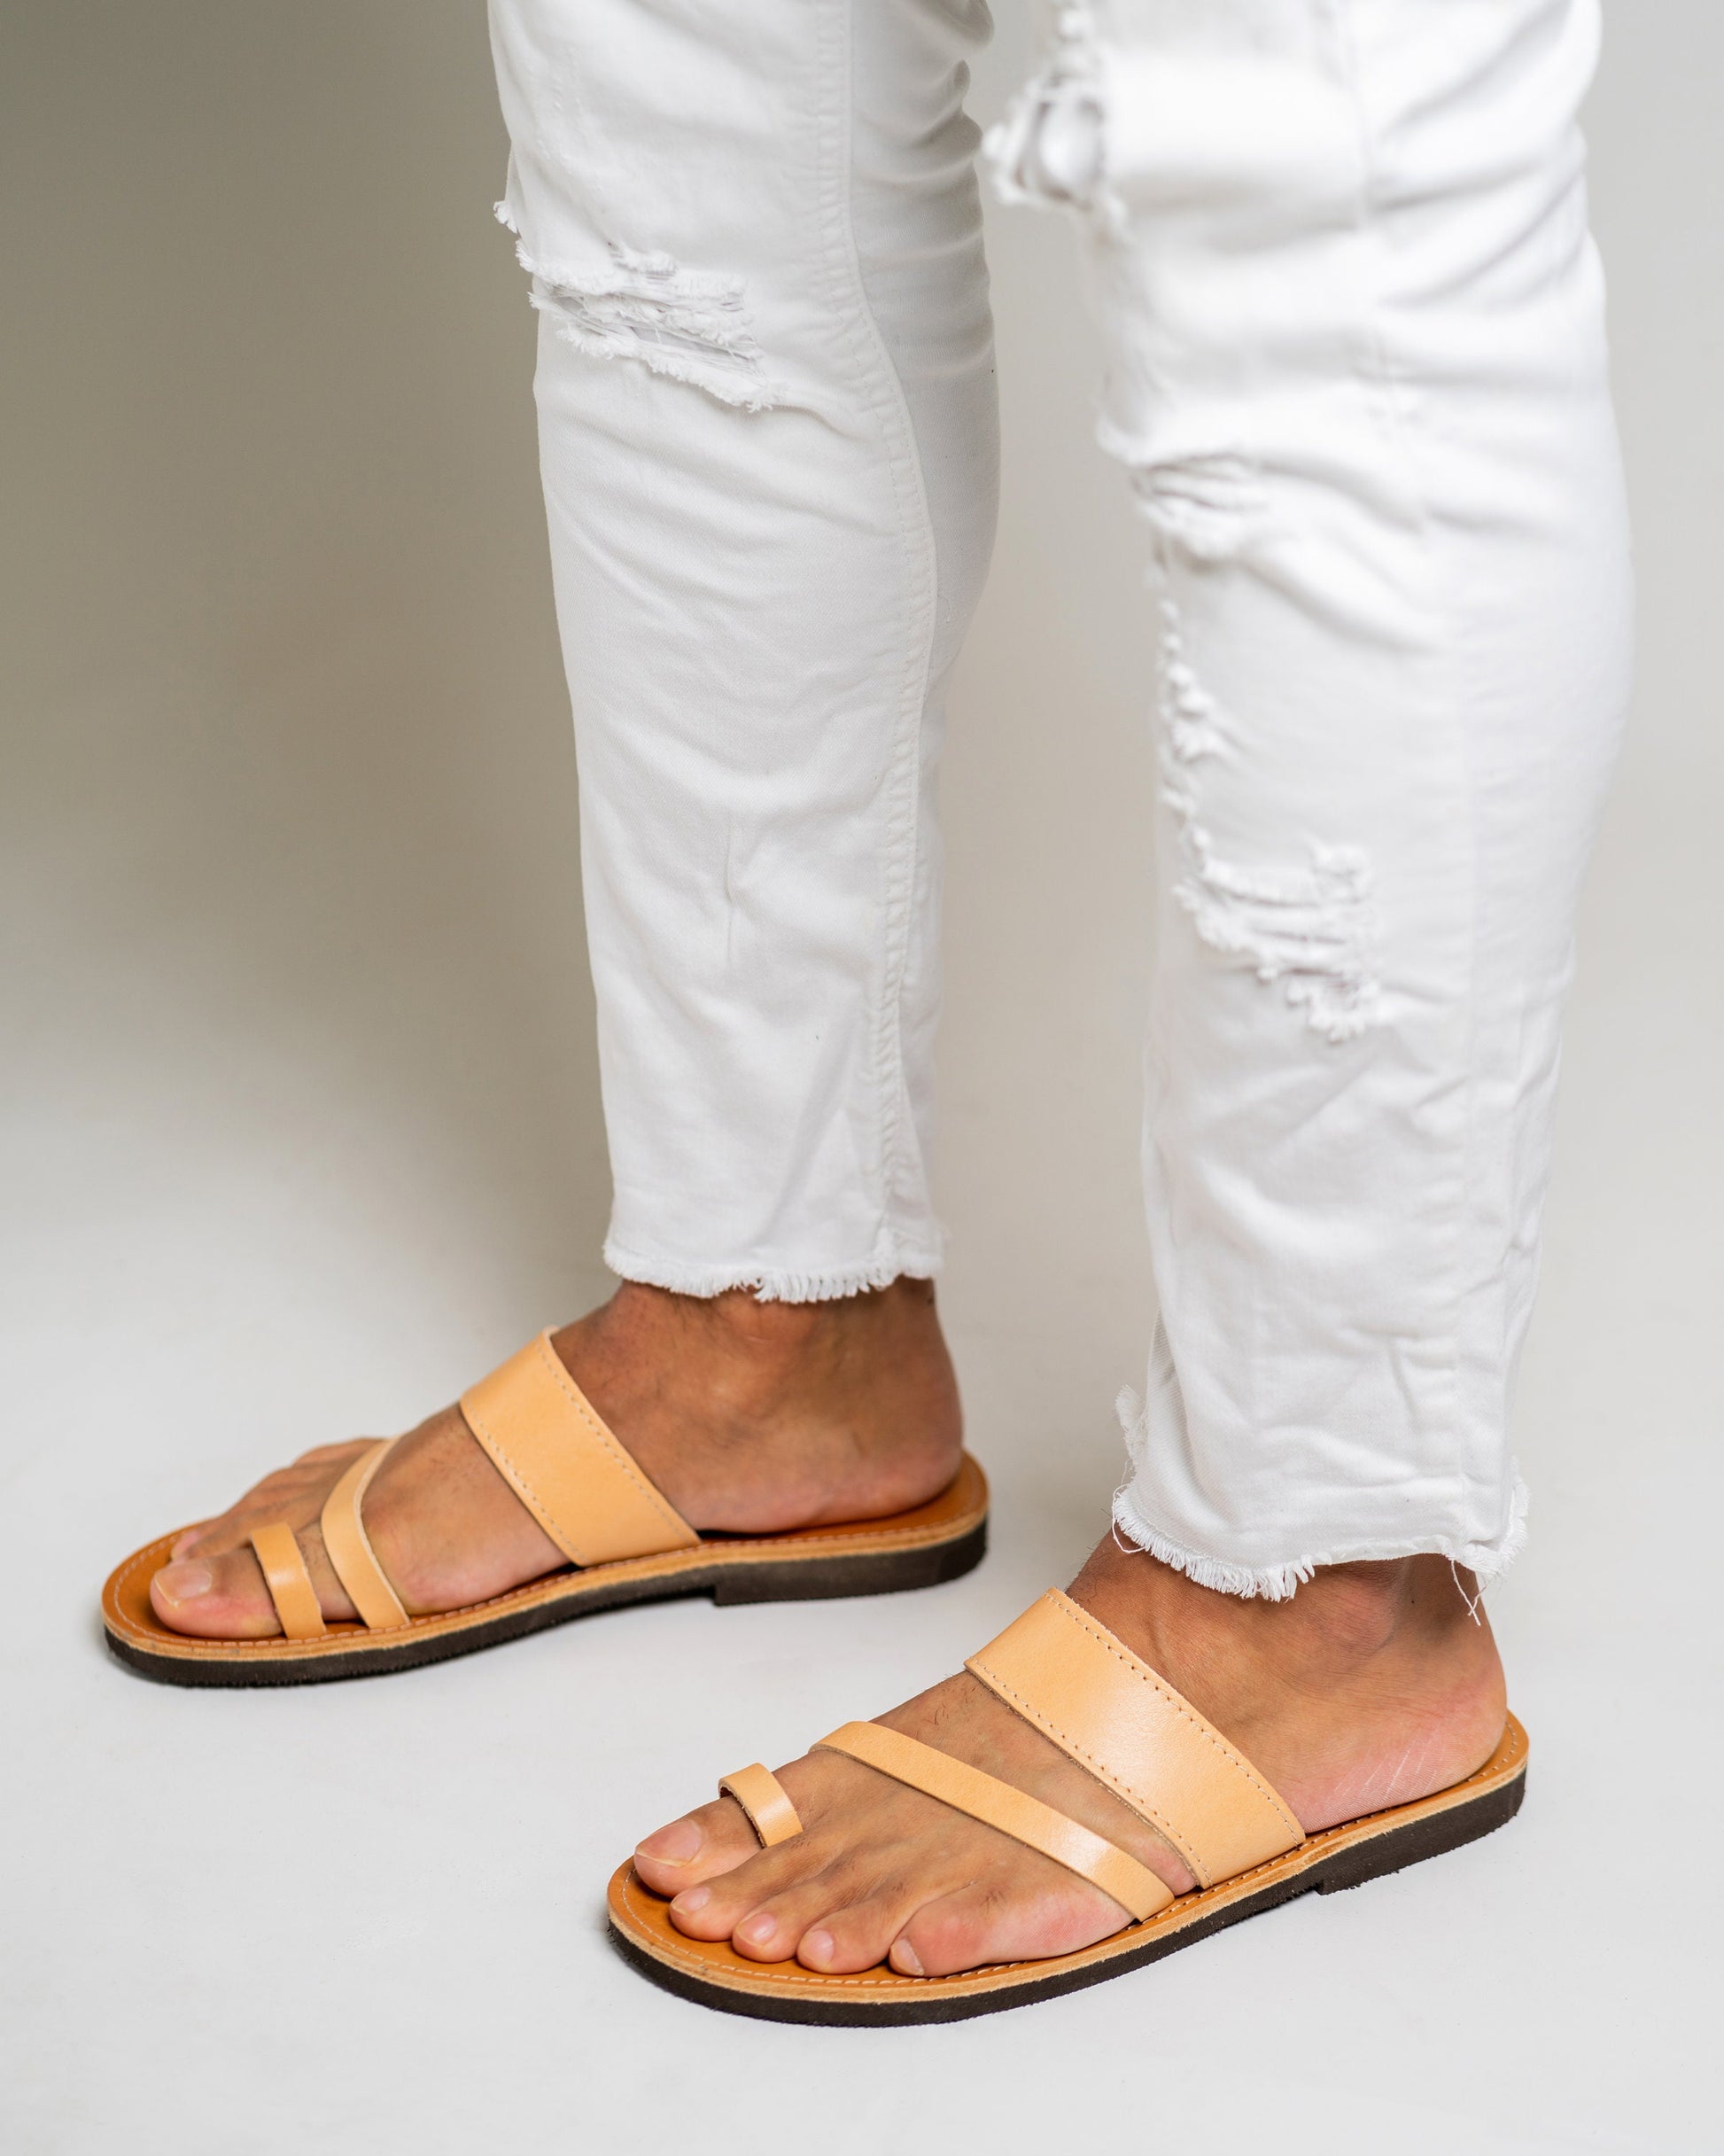 Mens leather sandals, Greek leather sandals for men, Toe ring comfort sandals, Minimal leather summer sandals, sandalen damen